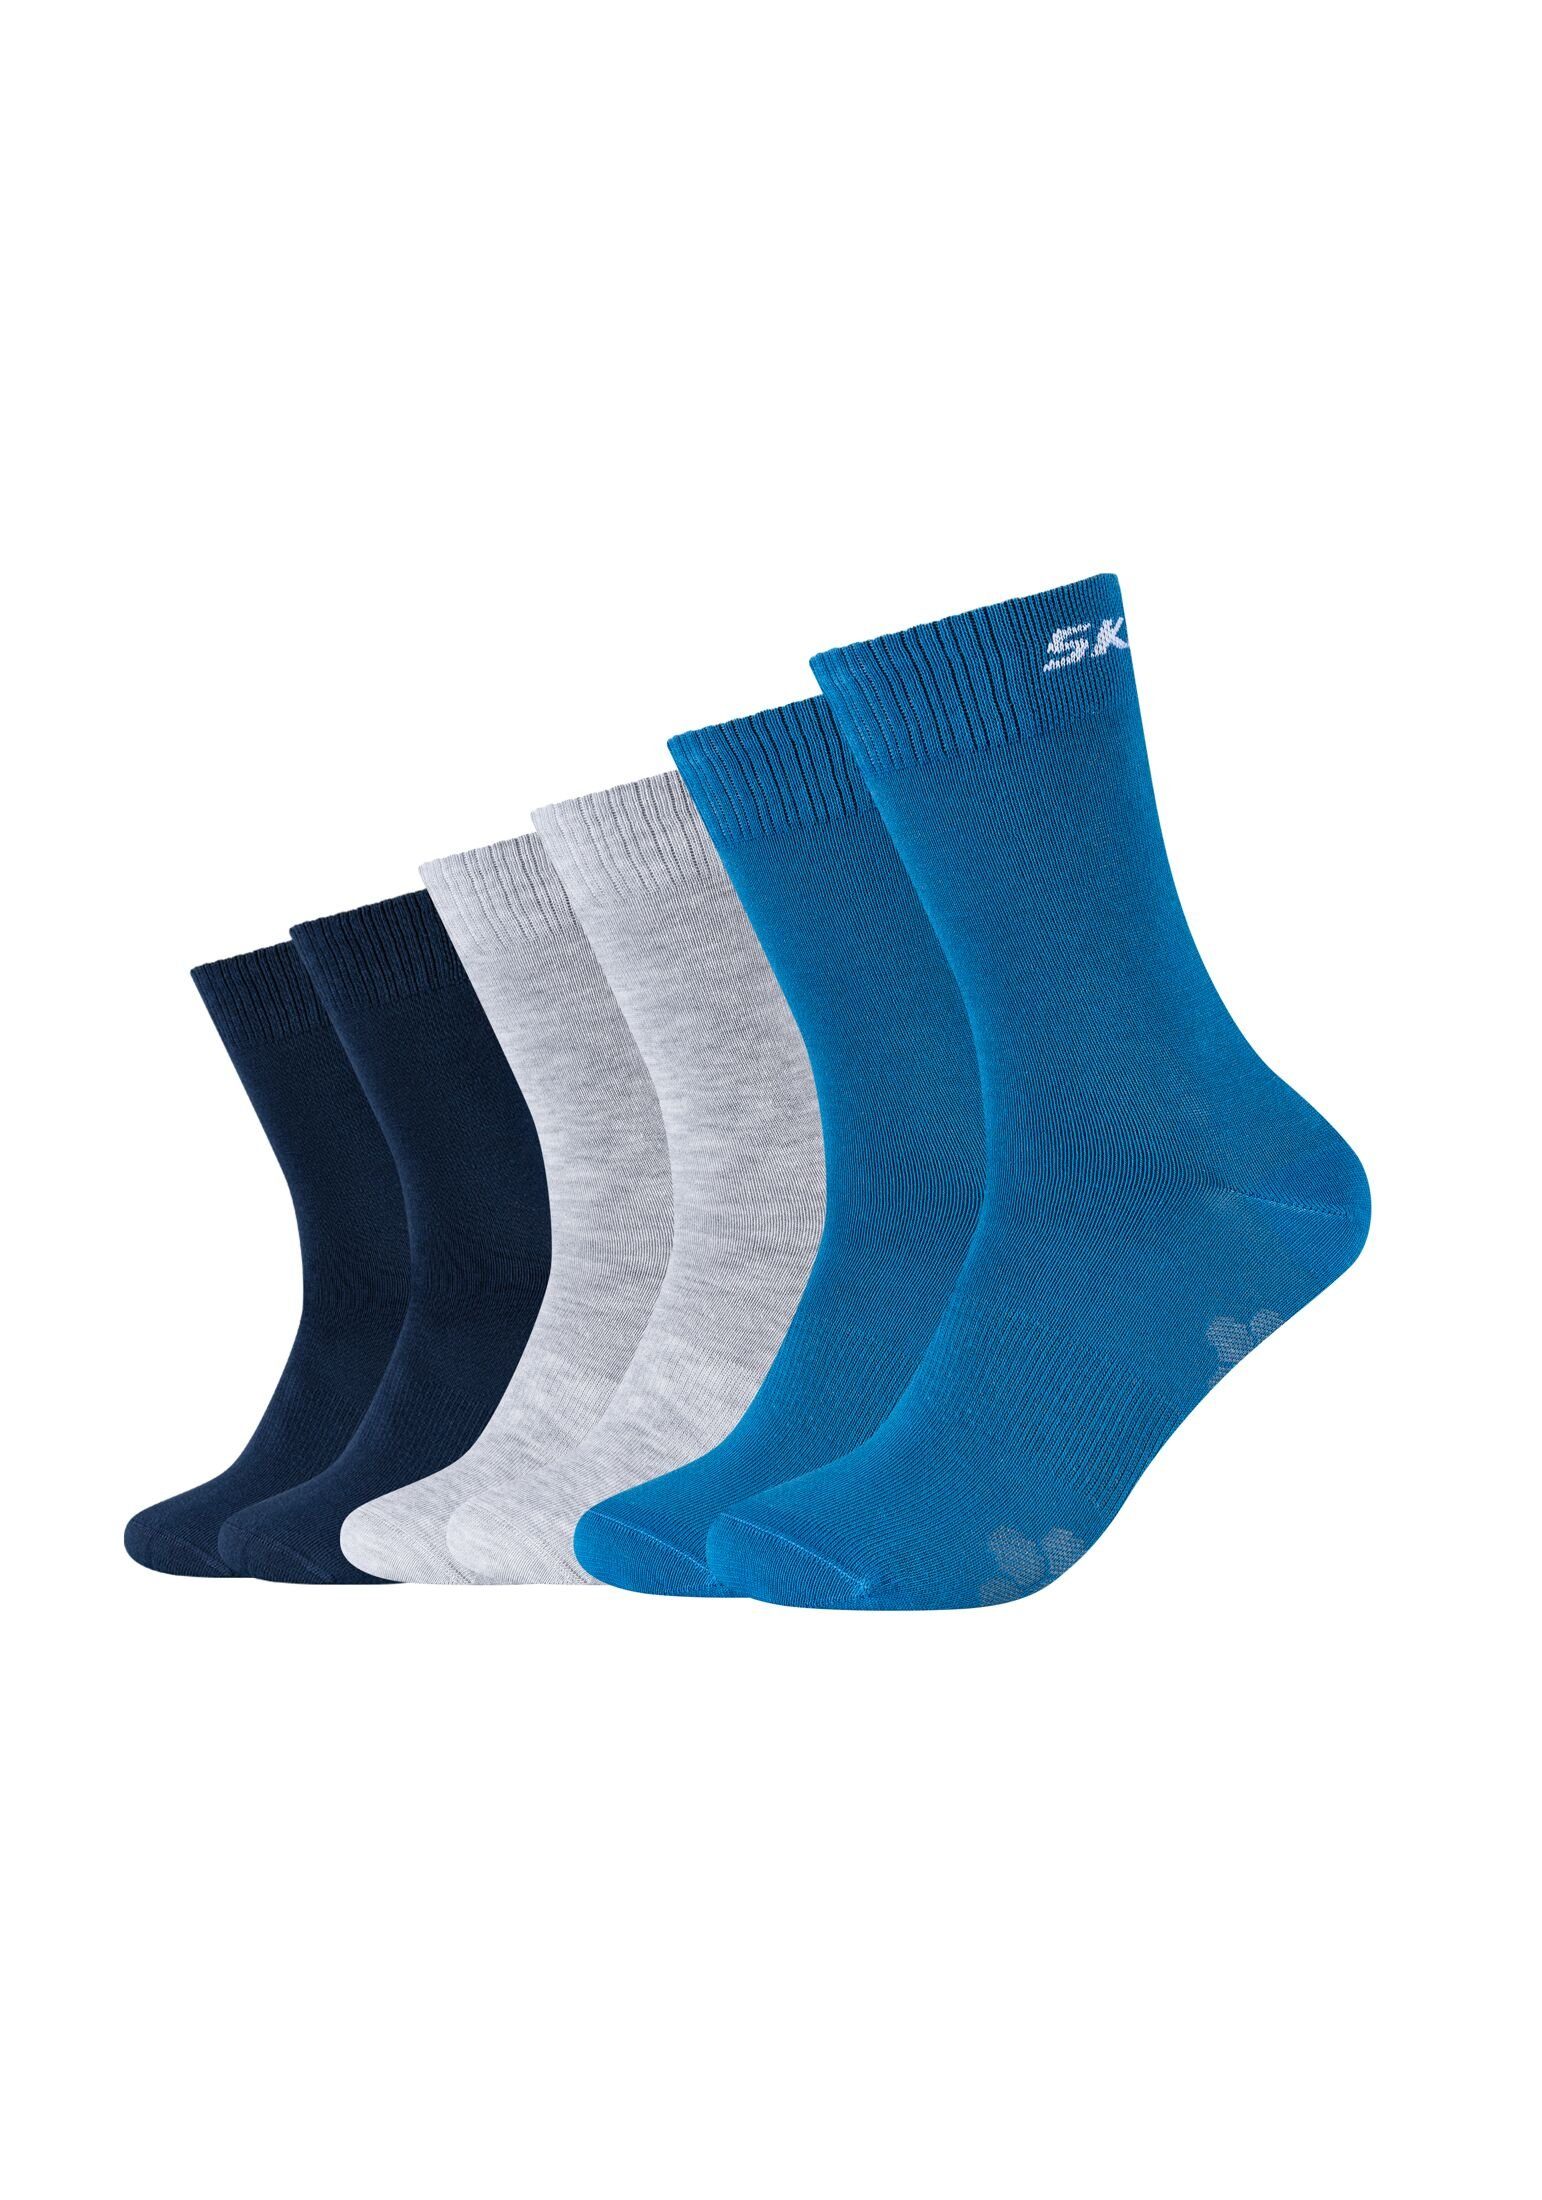 Skechers Socken Socken 6er blue Pack vallarta